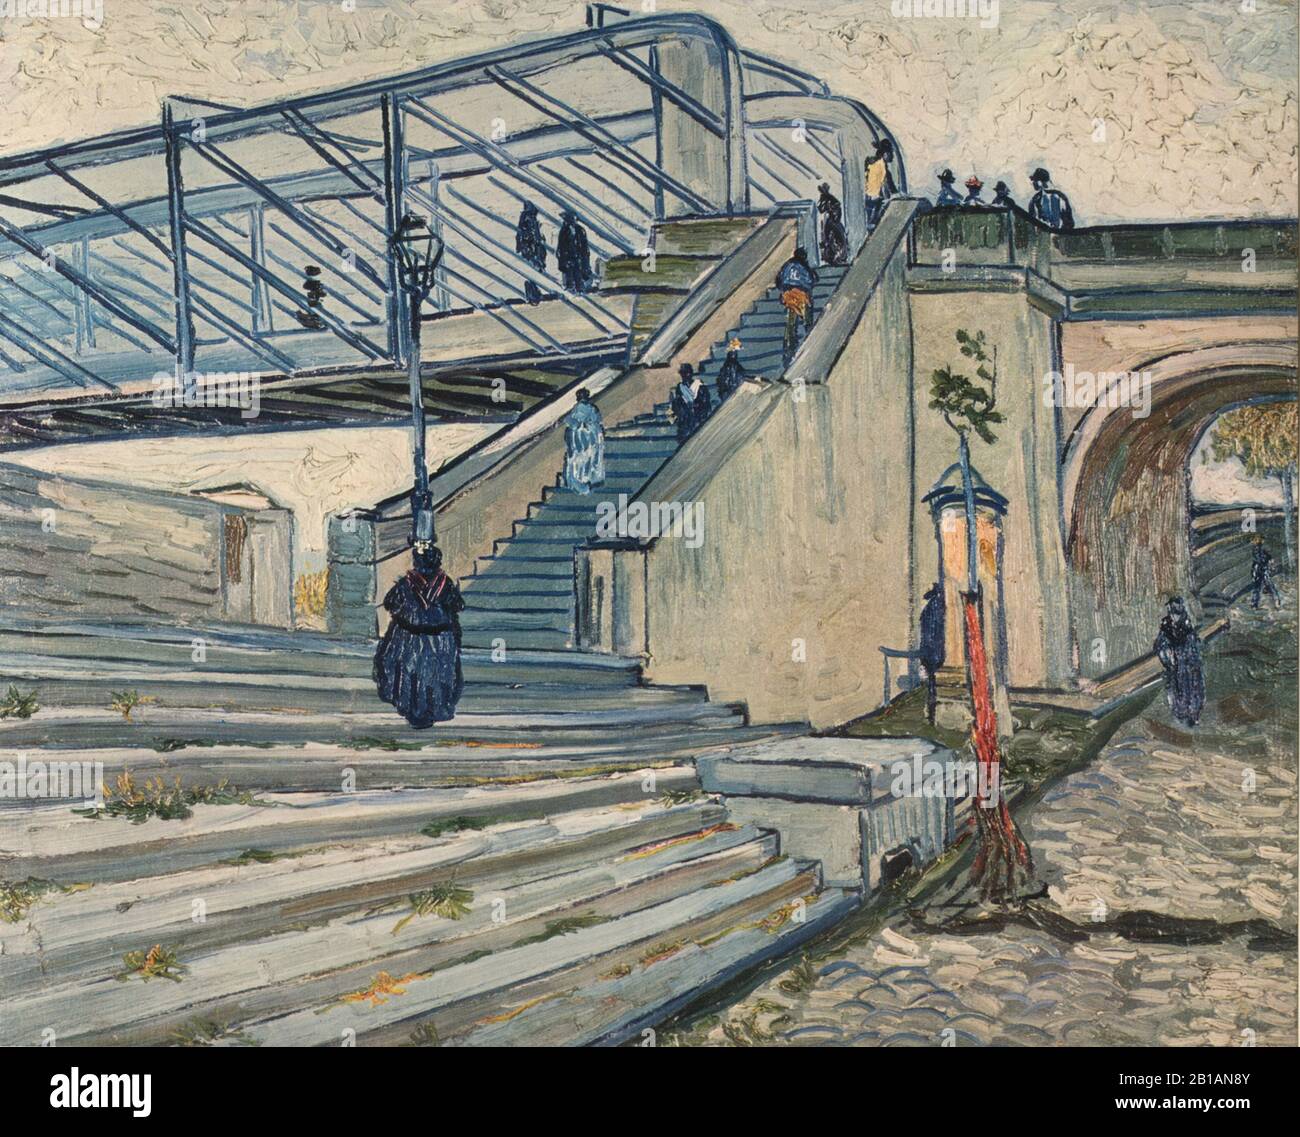 The Bridge at Trinquetaille, 1888 - dipinto di Vincent van Gogh - immagine Ad Altissima risoluzione e qualità Foto Stock